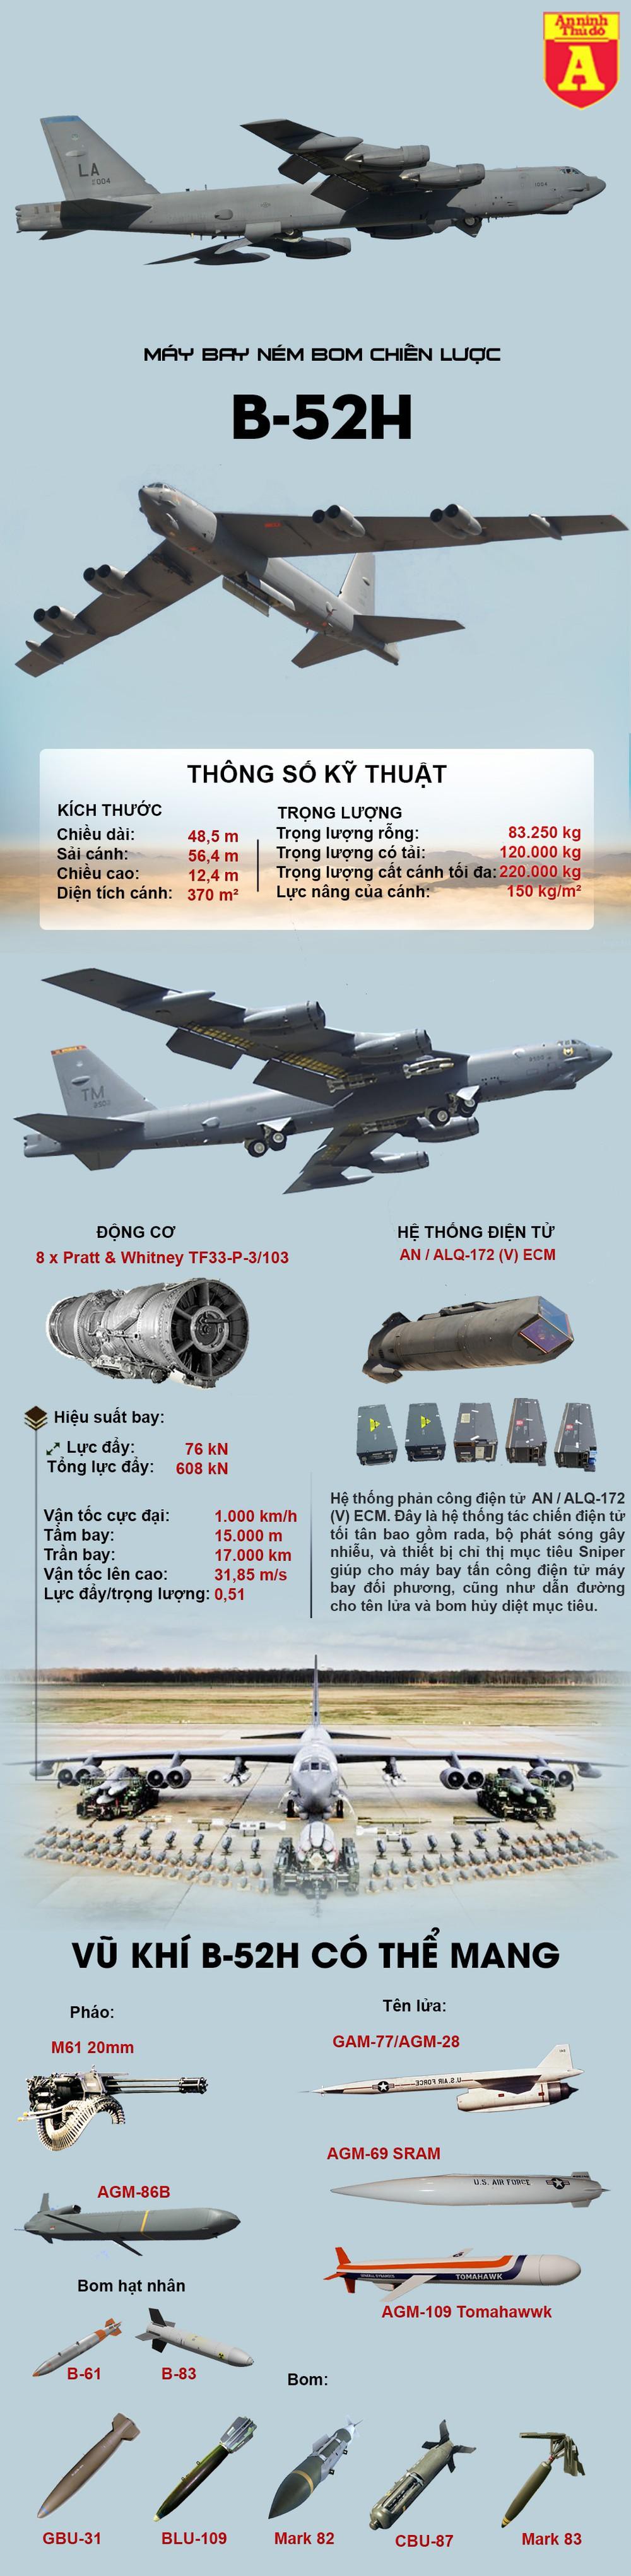 Cận cảnh "Pháo đài bay" B-52 của Mỹ - Ảnh 1